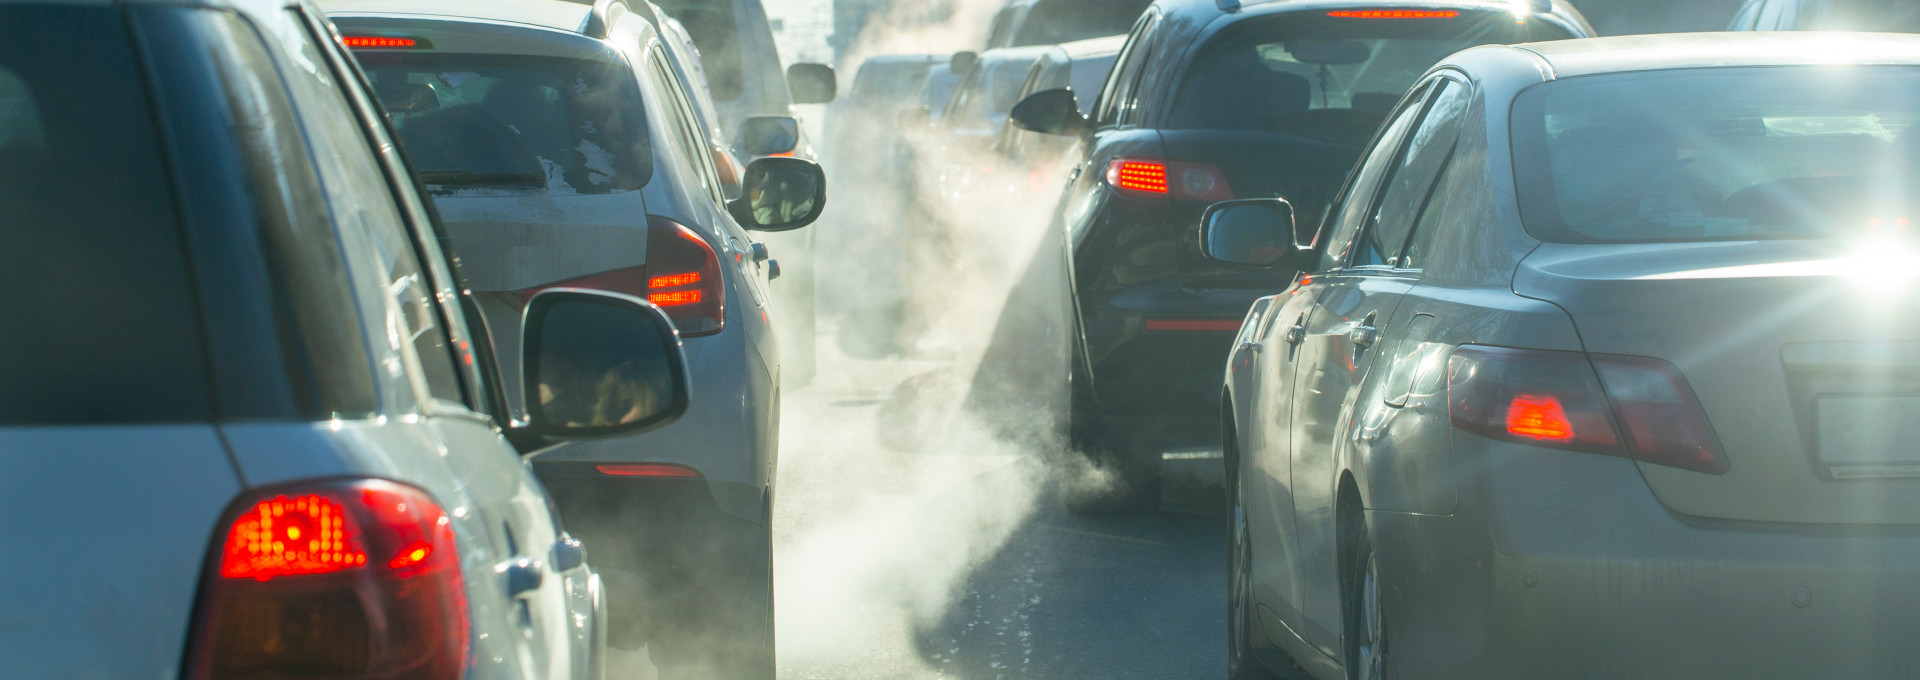 Verschmutzung durch die Abgase von Autos in der Stadt im Winter. Abgase von Autos an einem kalten Wintertag.